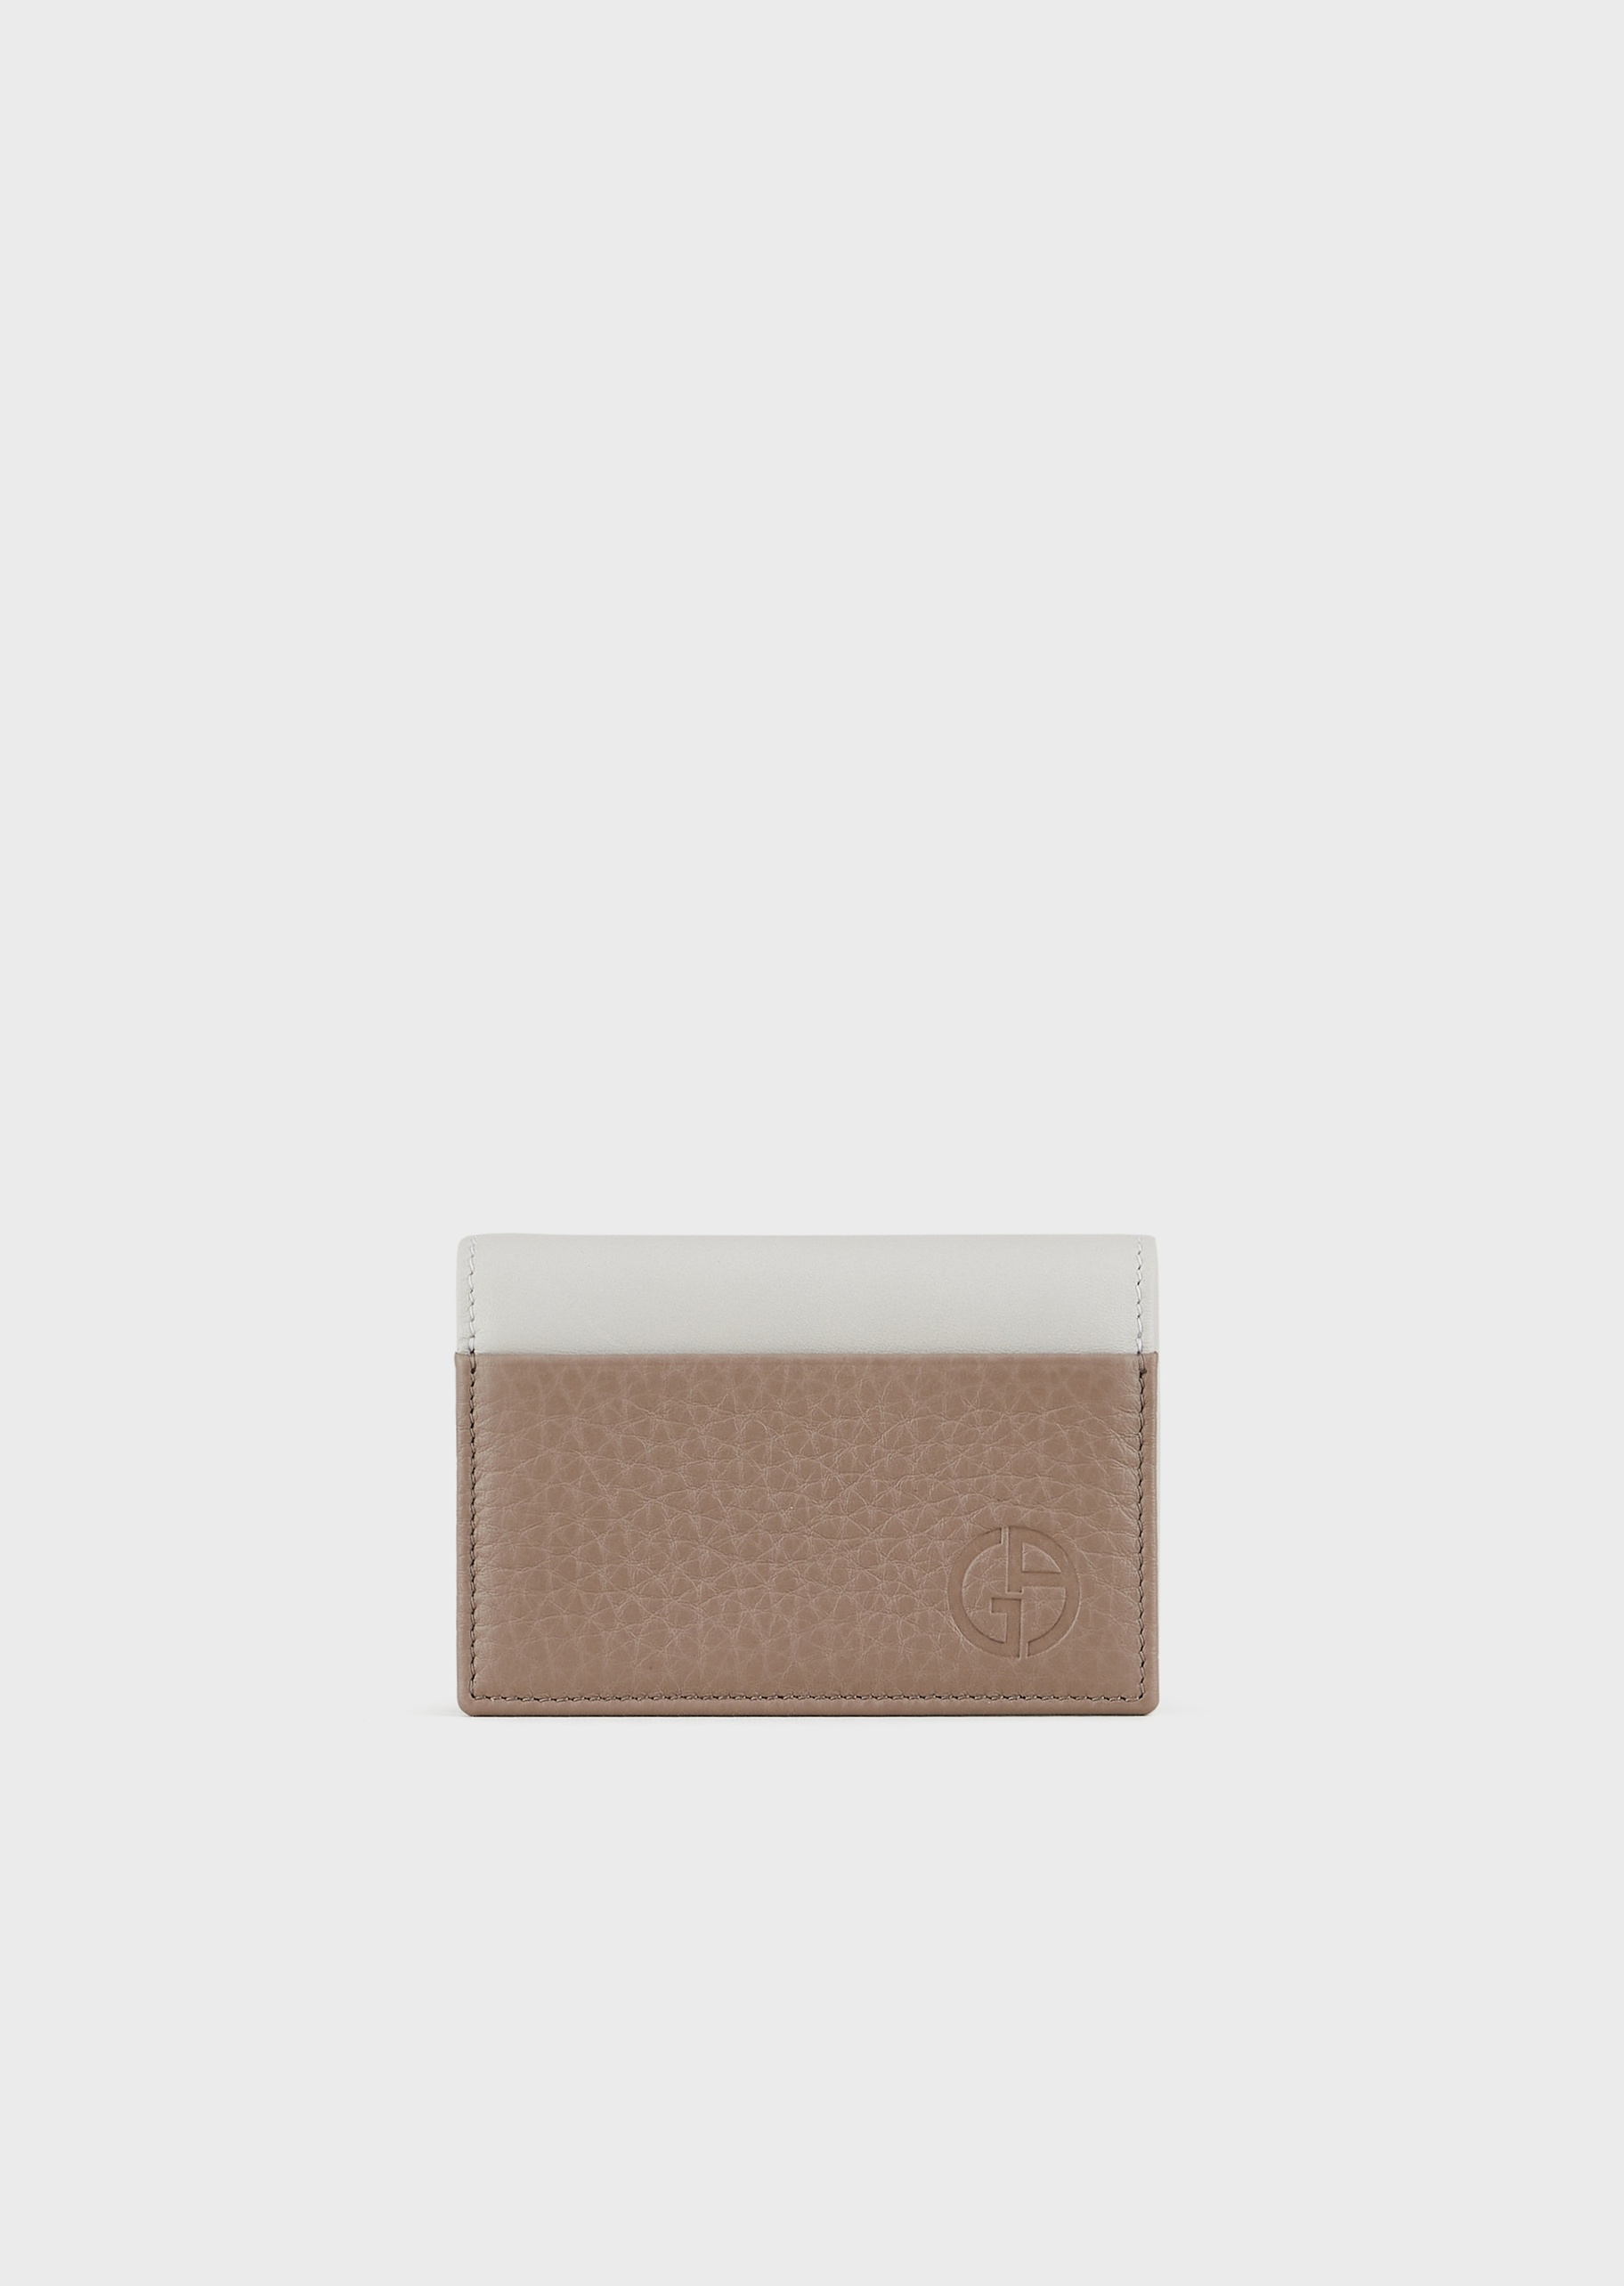 Giorgio Armani 男士牛皮革翻盖短款时尚双色手拿卡夹